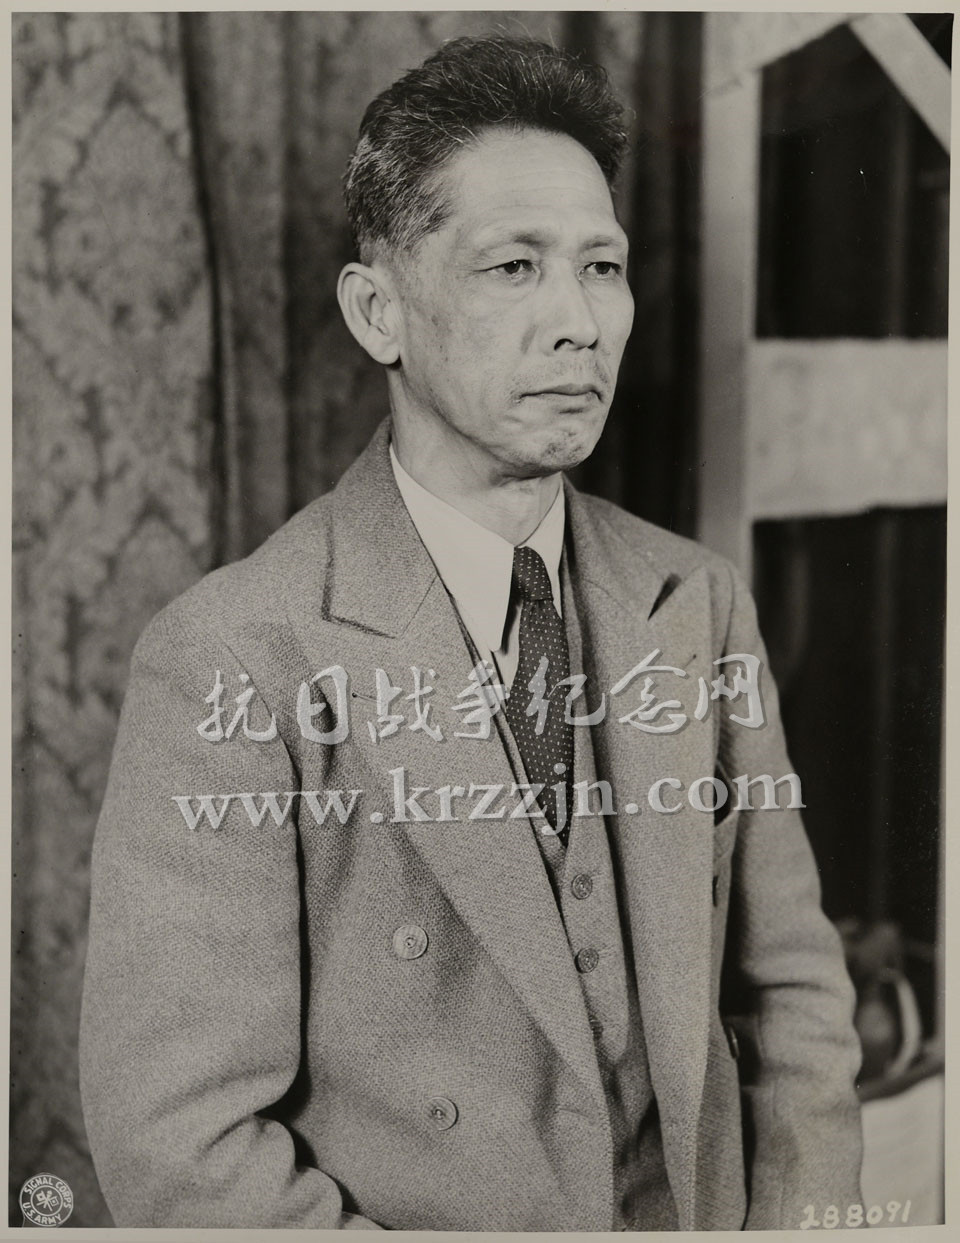 铃木贞一是远东国际军事法庭审判的日本甲级战犯之一